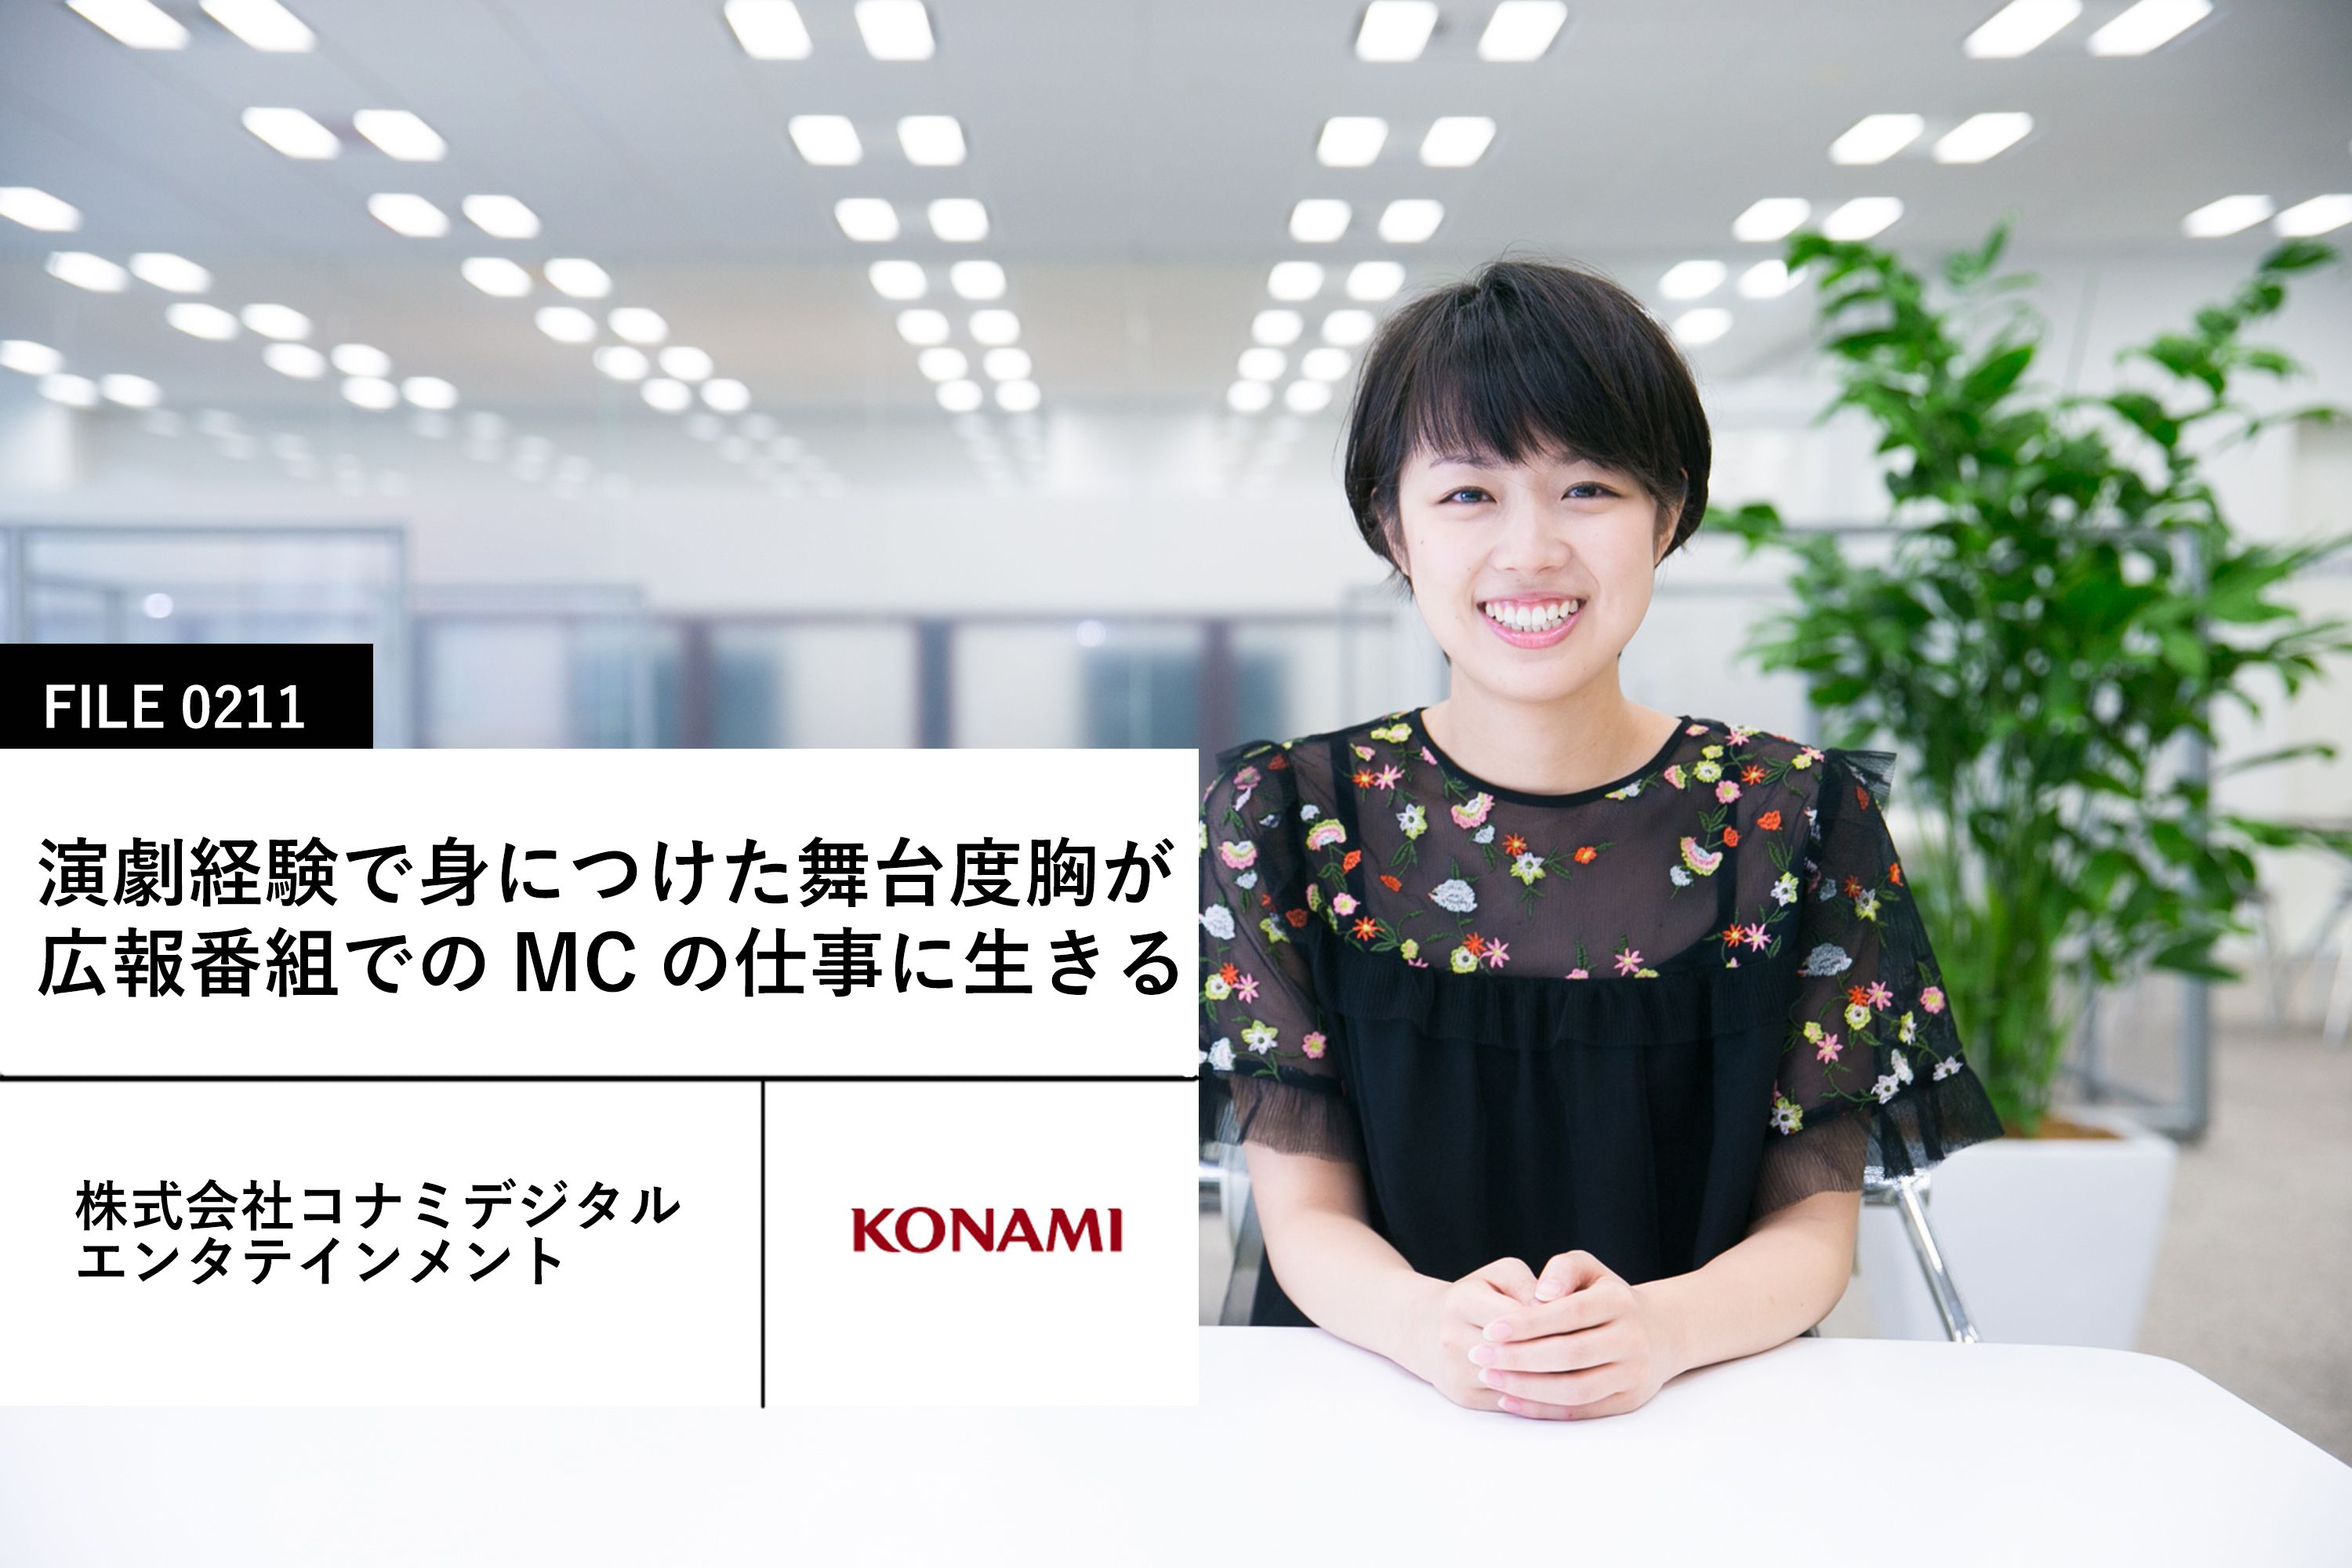 Konamiの先輩社員 株式会社コナミデジタルエンタテインメント マイナビ 学生の窓口